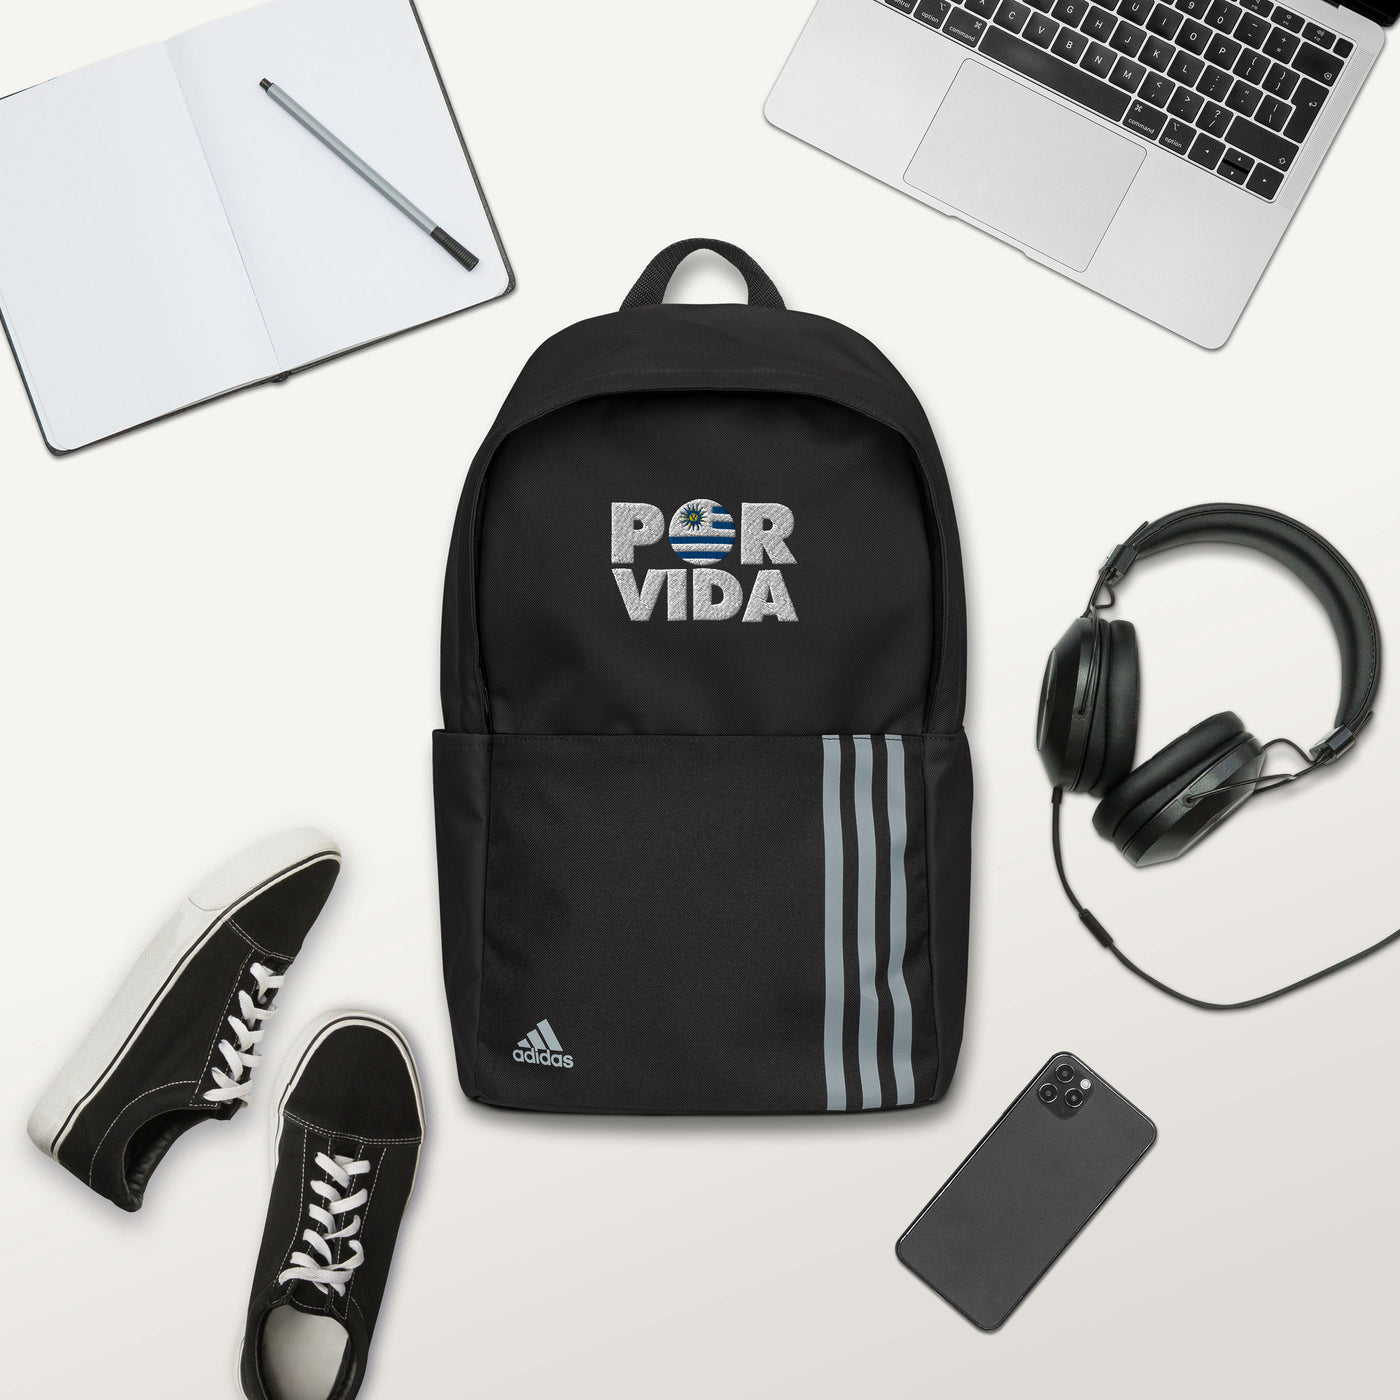 Uruguay POR VIDA adidas backpack